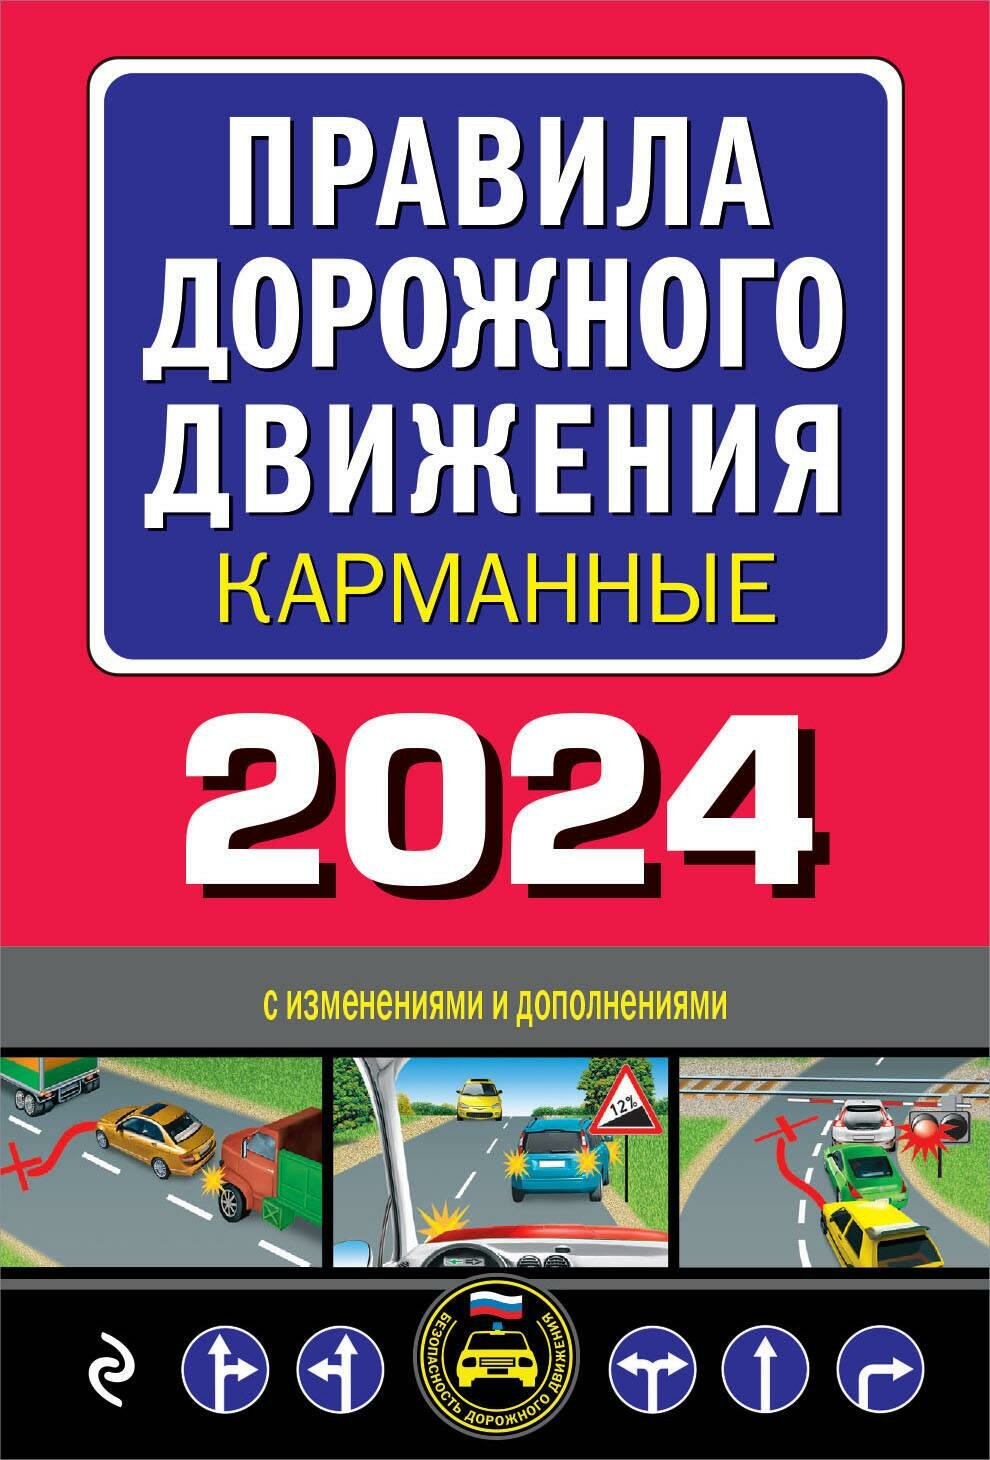 Правила дорожного движения карманные с изменениями и дополнениями на 2024 год - фото №1